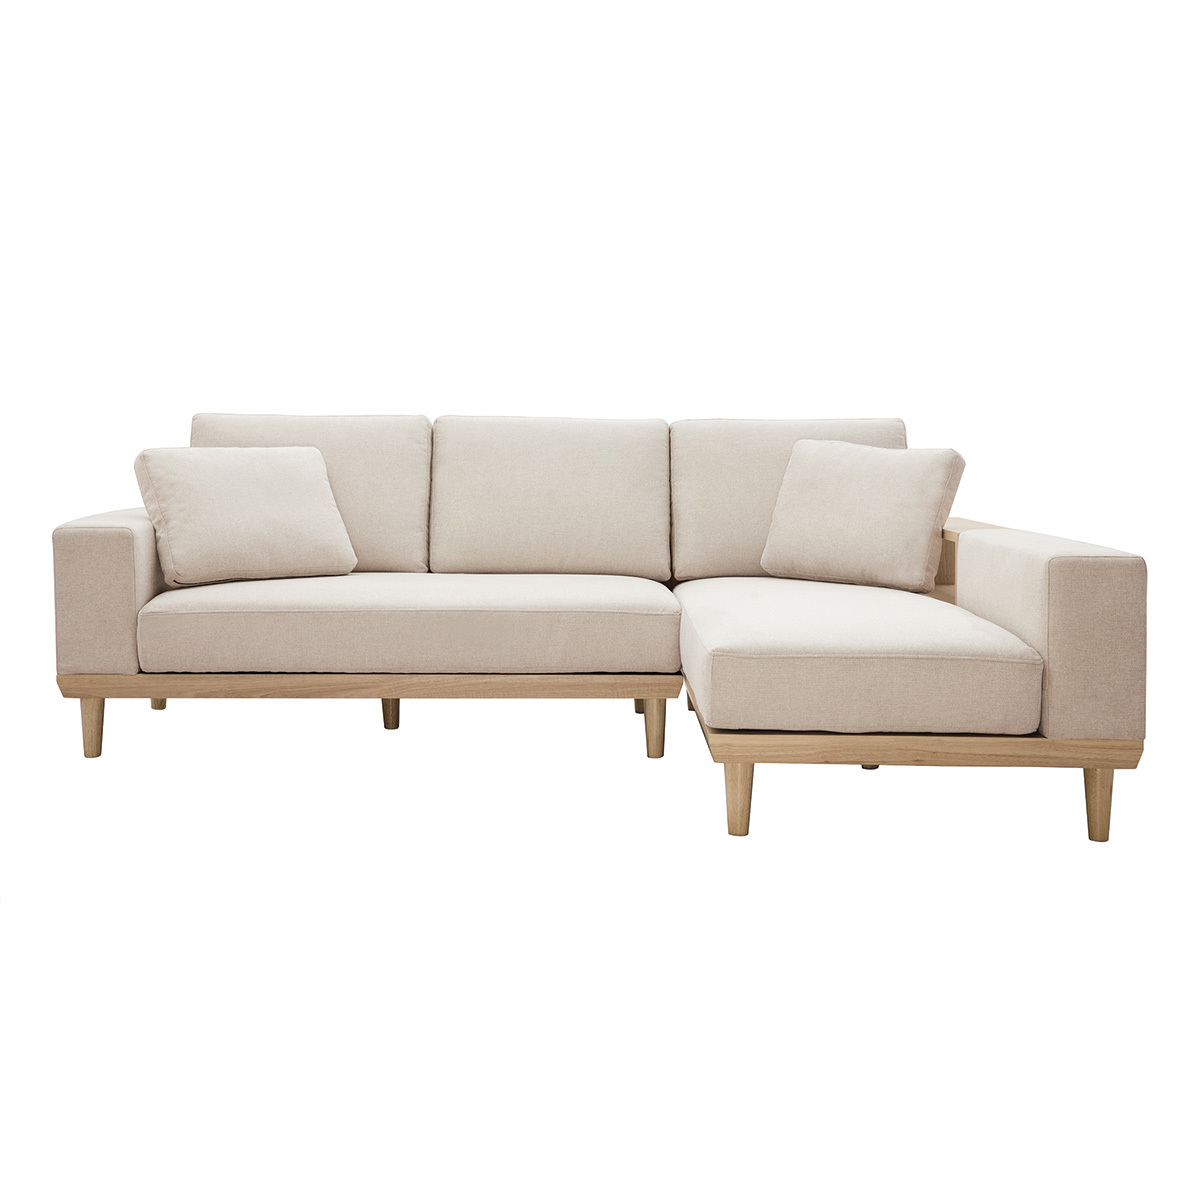 Canapé d'angle droit 5 places avec rangements en tissu effet velours texturé beige et bois clair KOMAO vue1